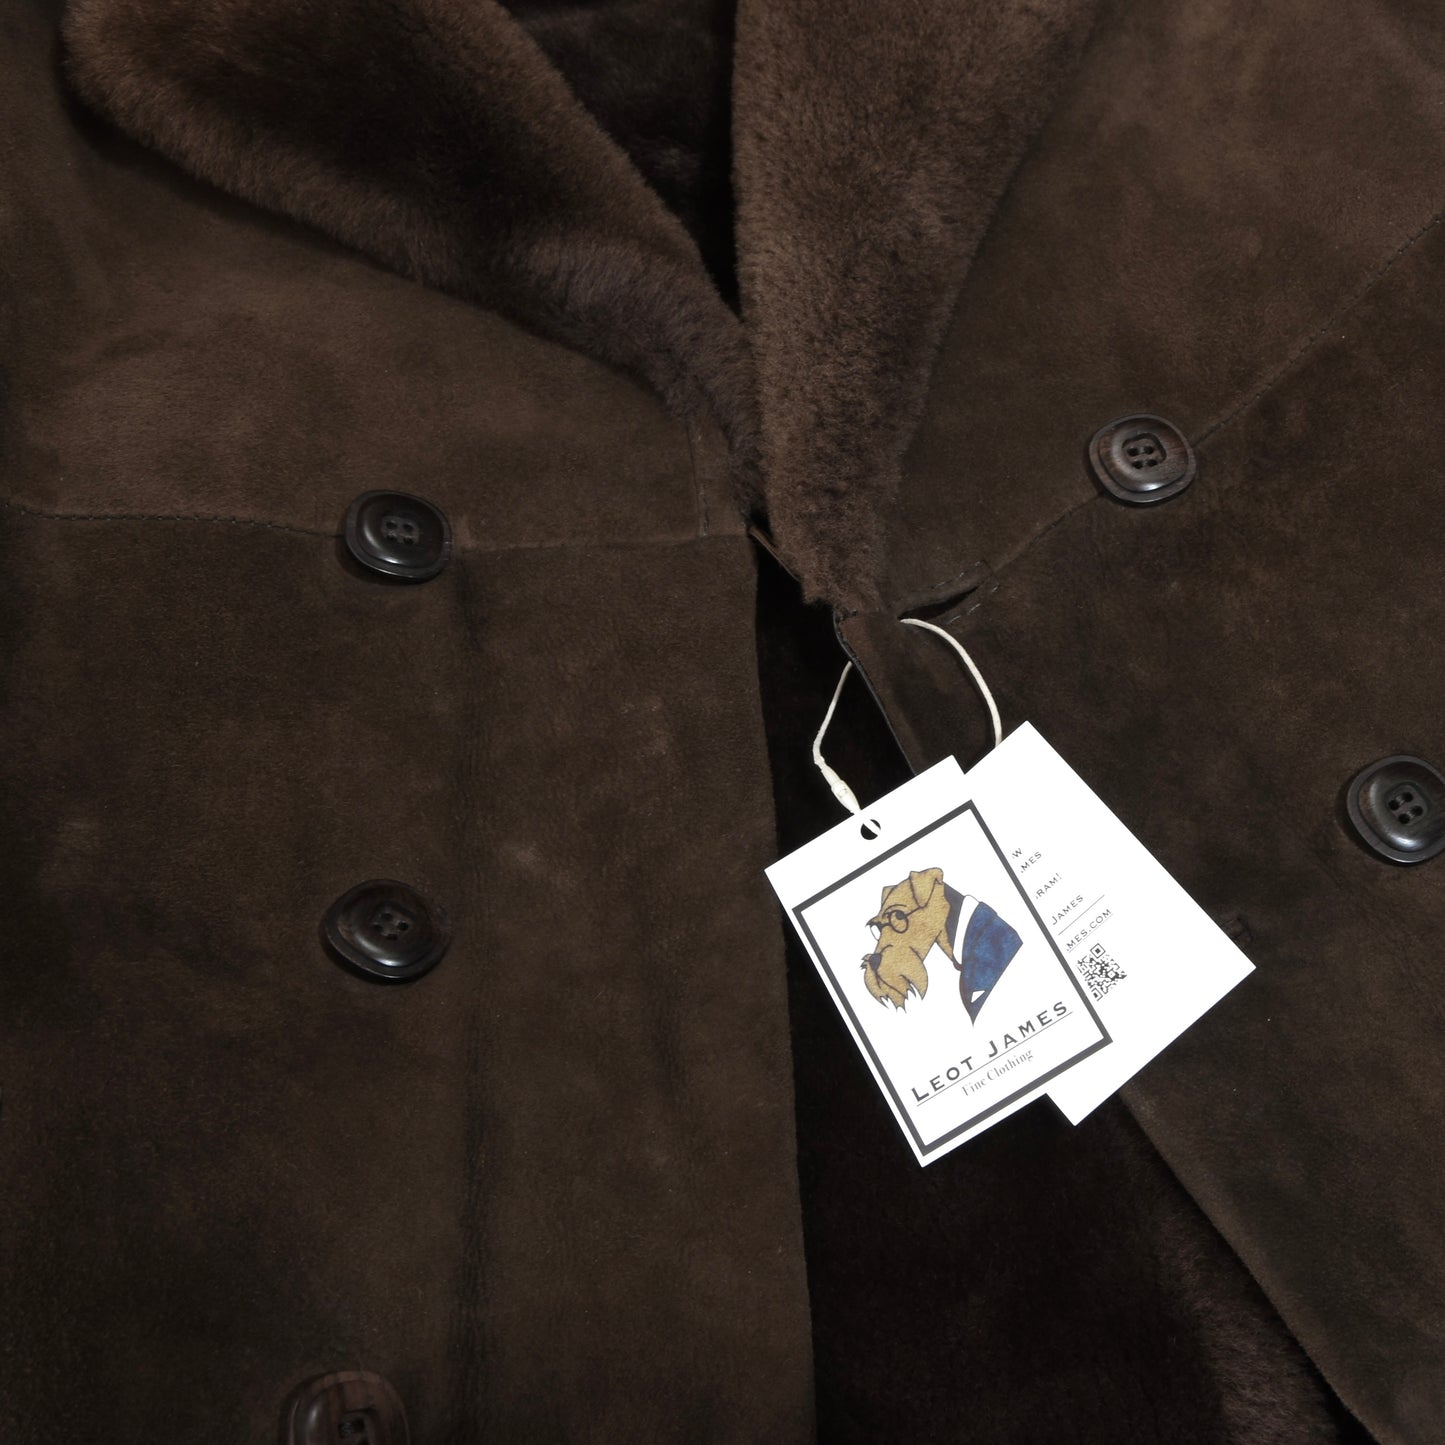 Classic Shearling Coat ca. 54.5cm  - Brown